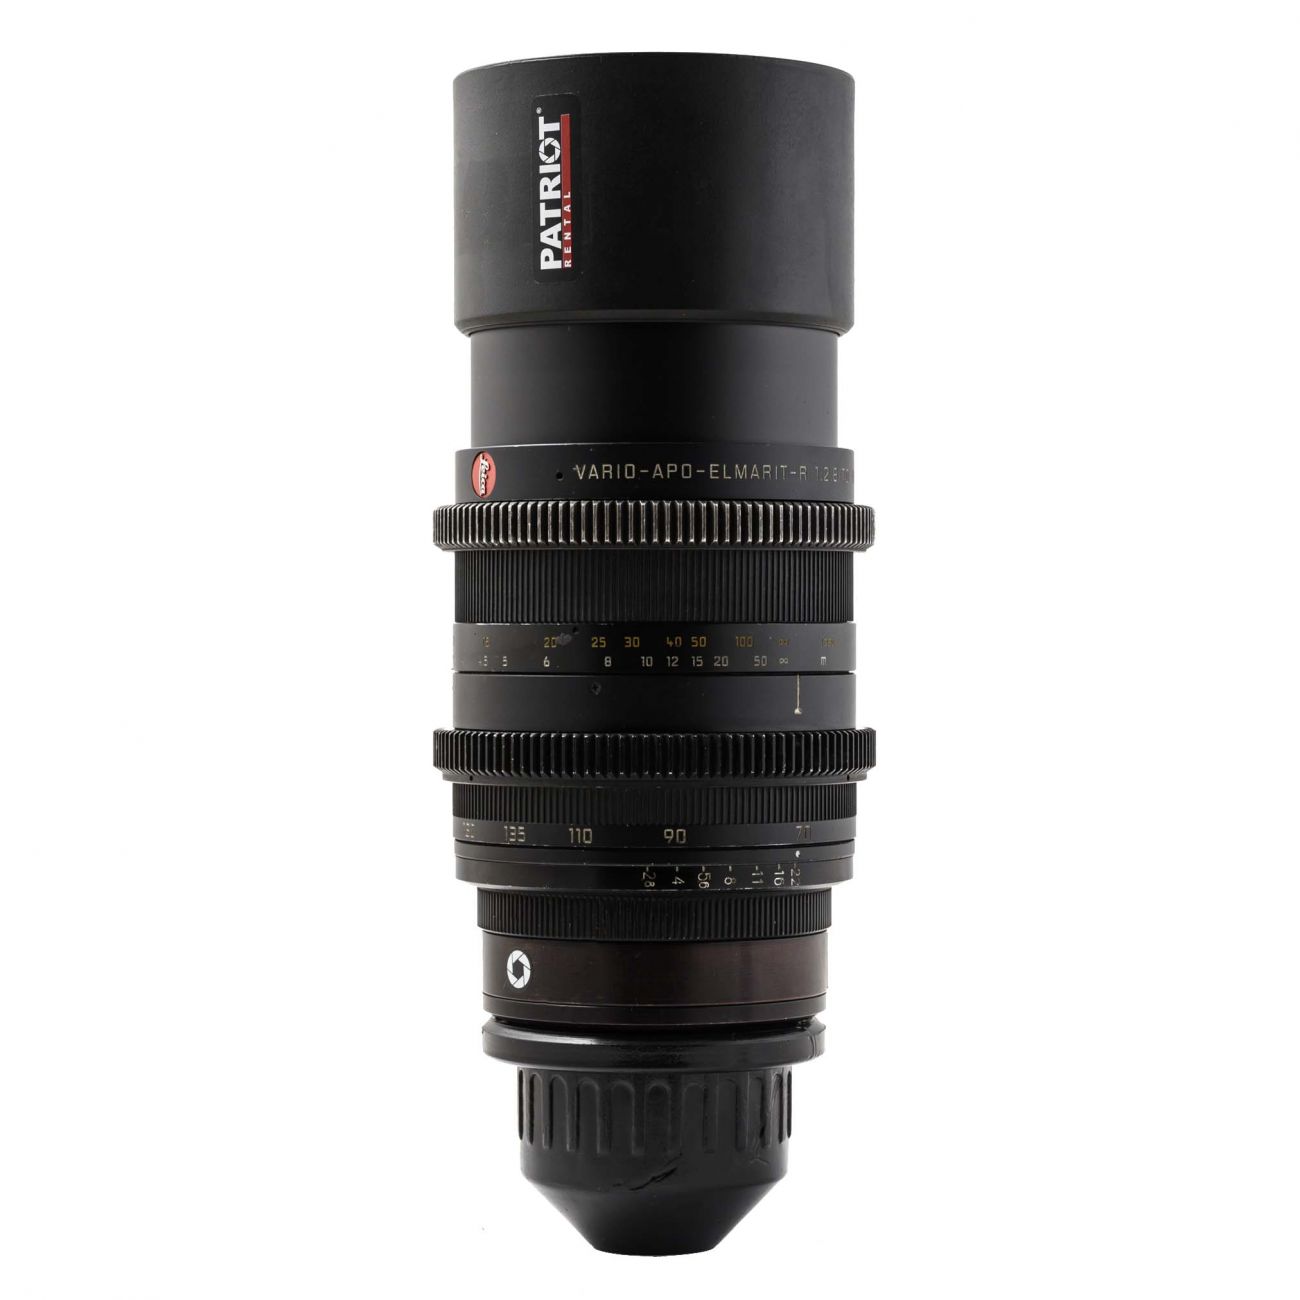 LEICA VARIO-APO-ELMARIT-R 70-180mm Lens f/2.8